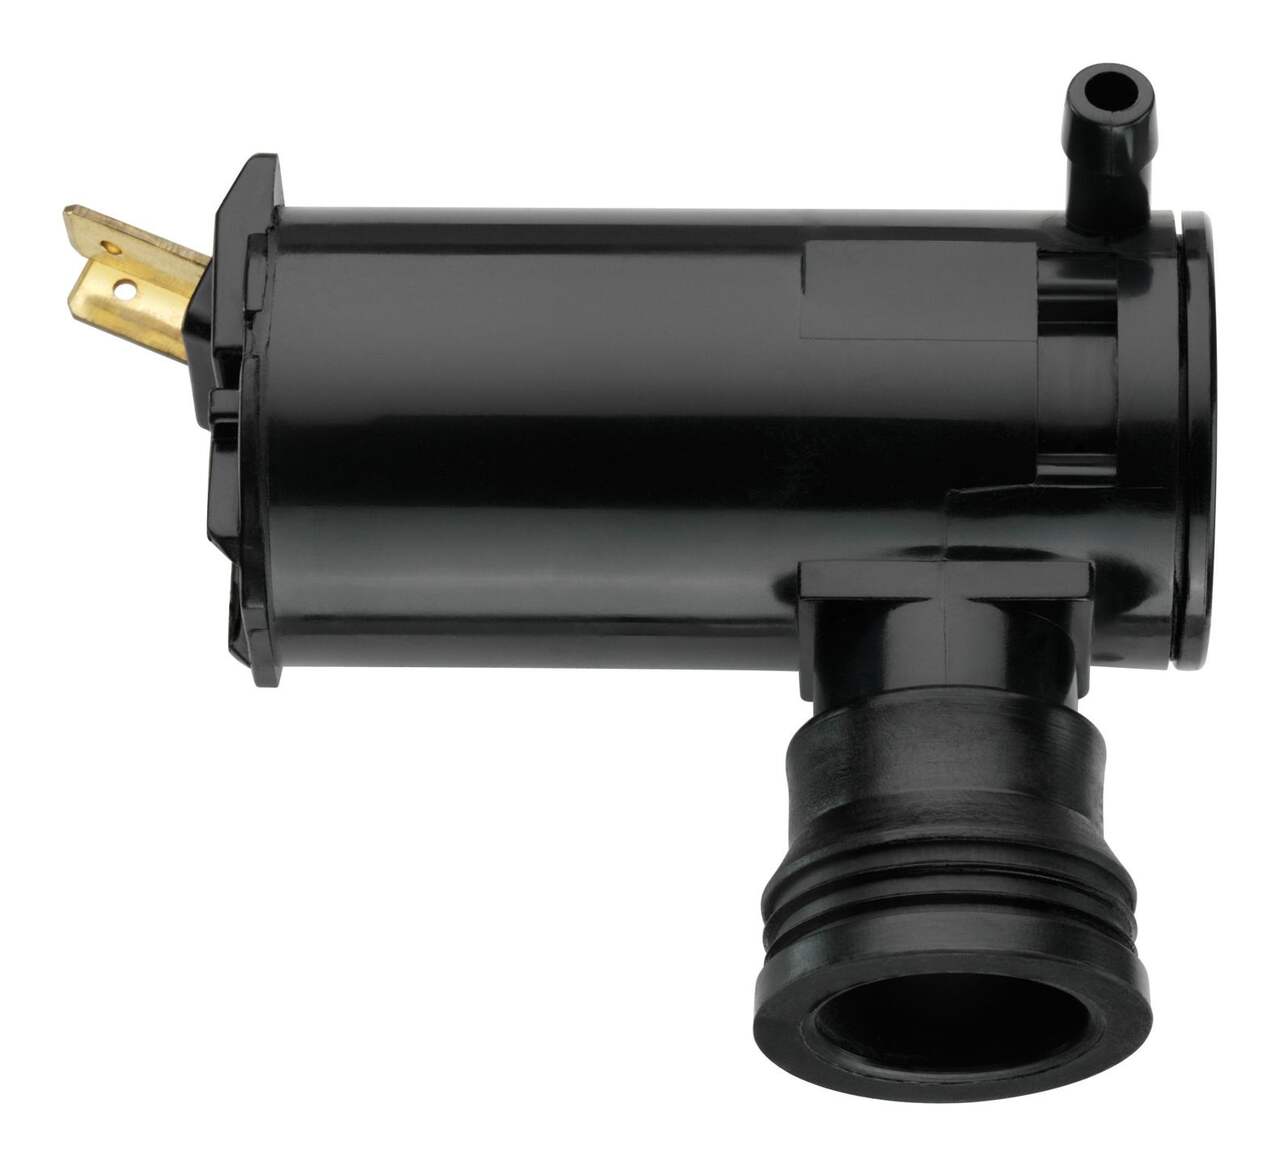 Windshield / Wiper Washer Fluid Pump - Trico Spray 11-612